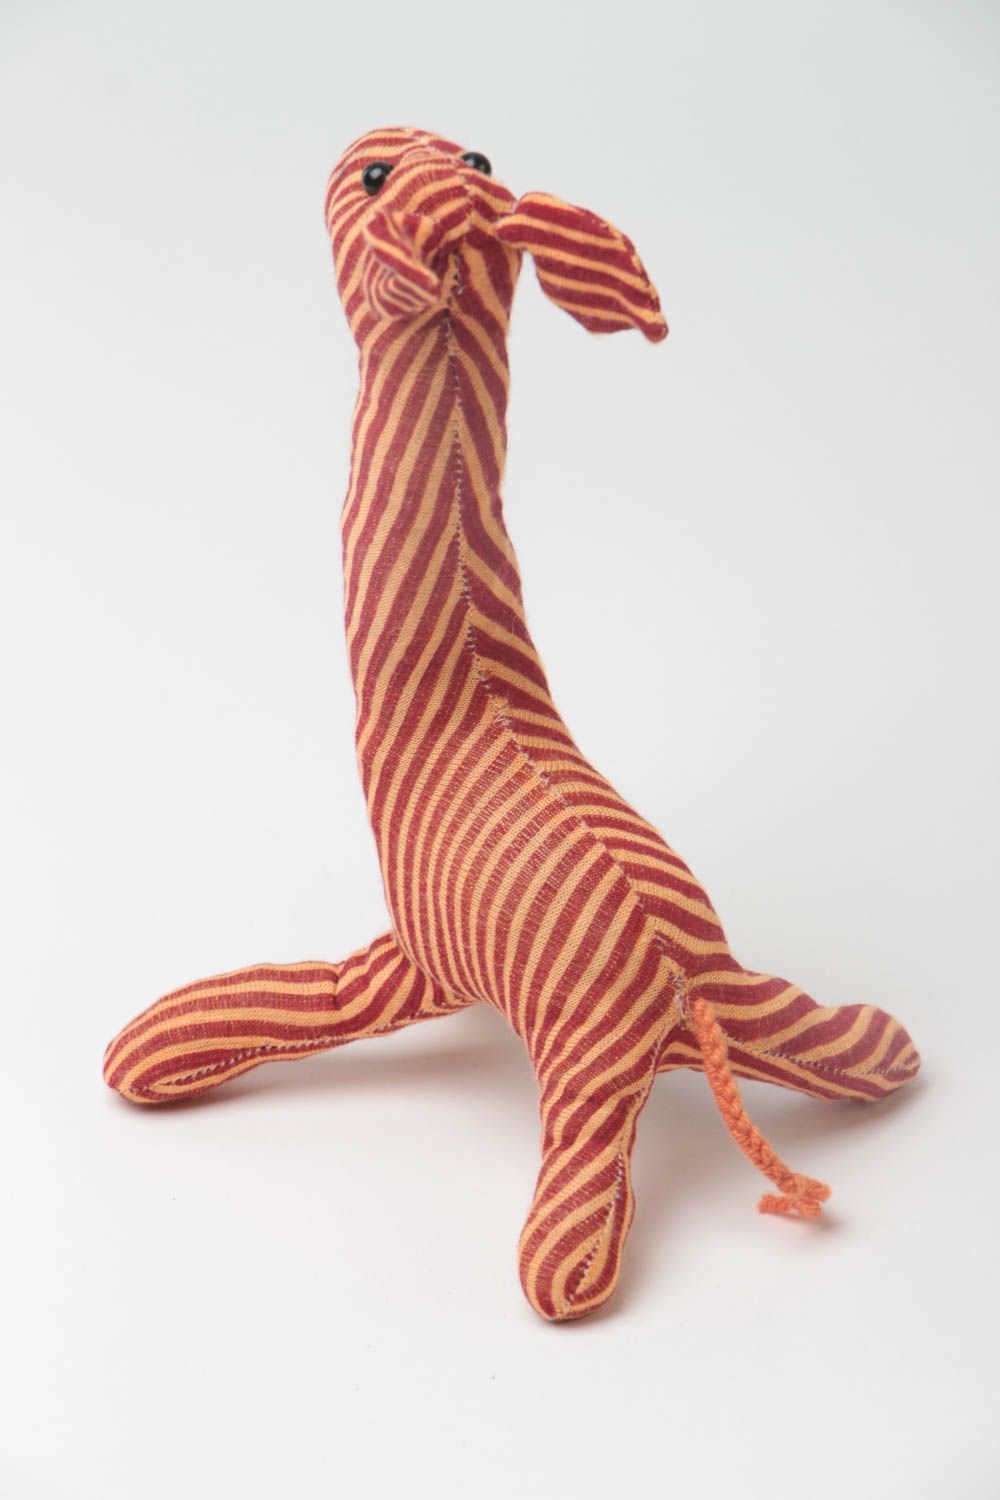 Handmade Stoff Kuscheltier Giraffe weich gestreift lustig schön für Kinder foto 4